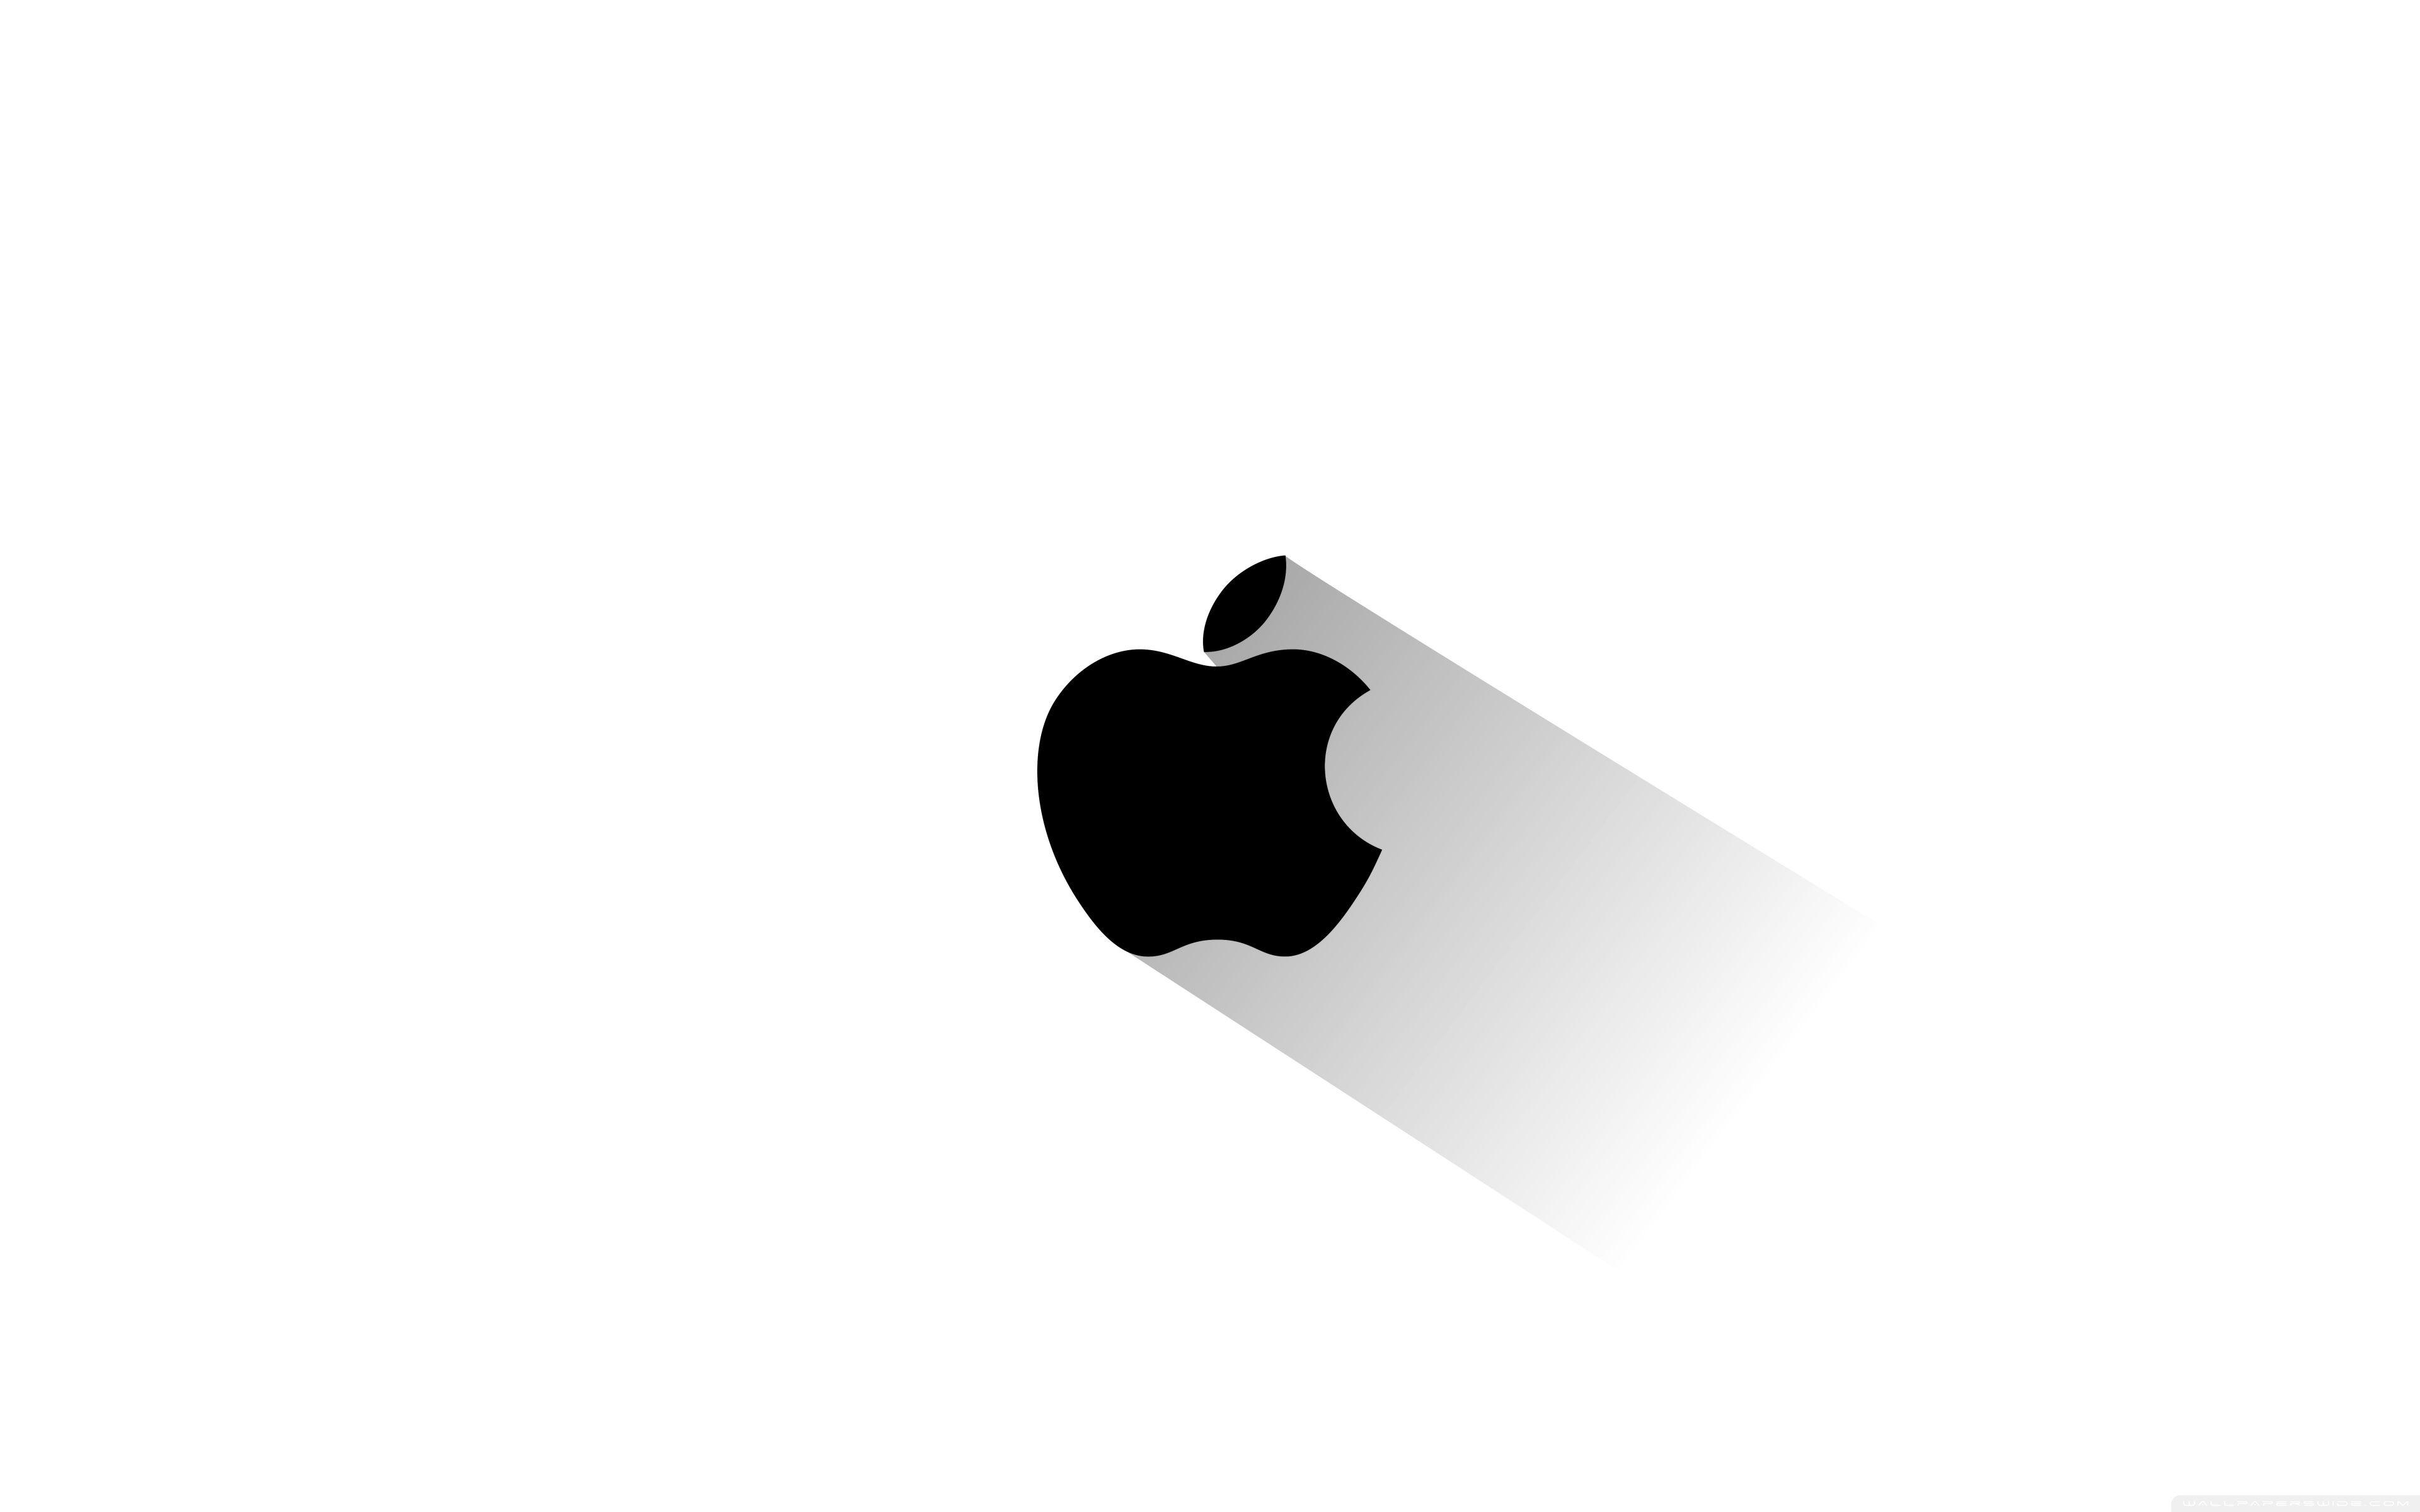 Wide Logo - Apple Logo ❤ 4K HD Desktop Wallpaper for • Wide & Ultra Widescreen